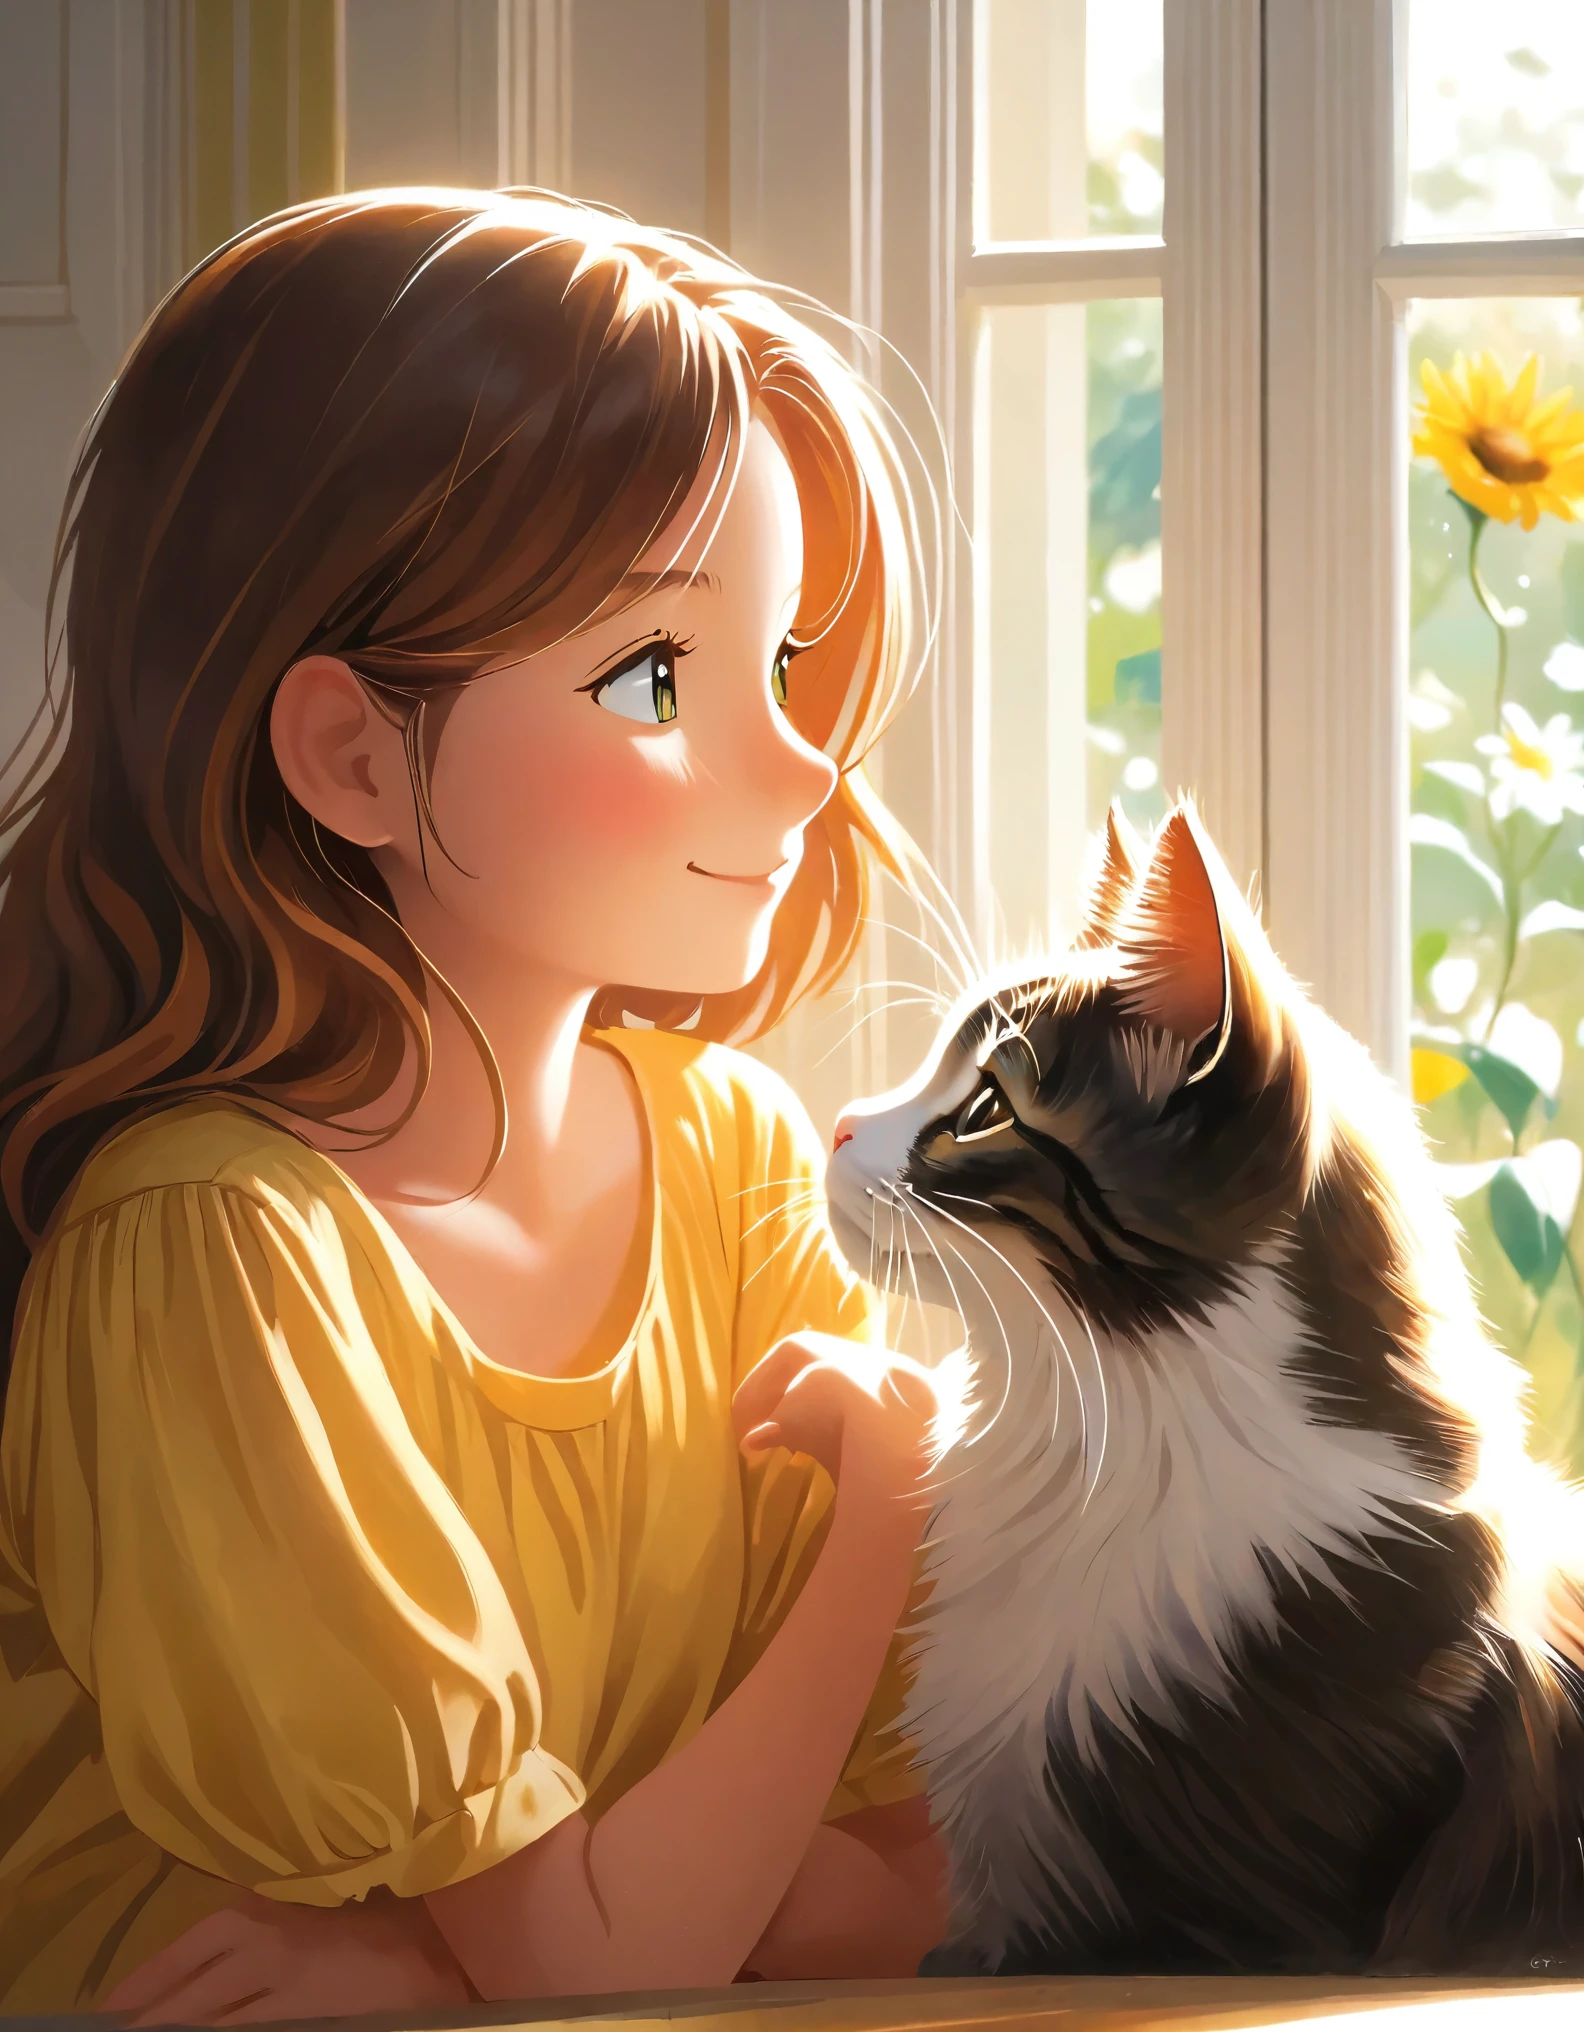  少女と猫の愛らしい絆を捉える, 愛情と遊び心を共有する瞬間に彼らの友情が表れている. この画像は暖かさと心地よさを伝えている, 少女と猫のやり取りは、彼らの深い絆と相互理解を反映している。. 微妙な仕草や表情を通して, この写真は、少女と彼女の猫の仲間とのシンプルでありながら深い関係に見られる喜びと満足感を表現している。, 視聴者に無条件の愛と友情の美しさを味わってもらう